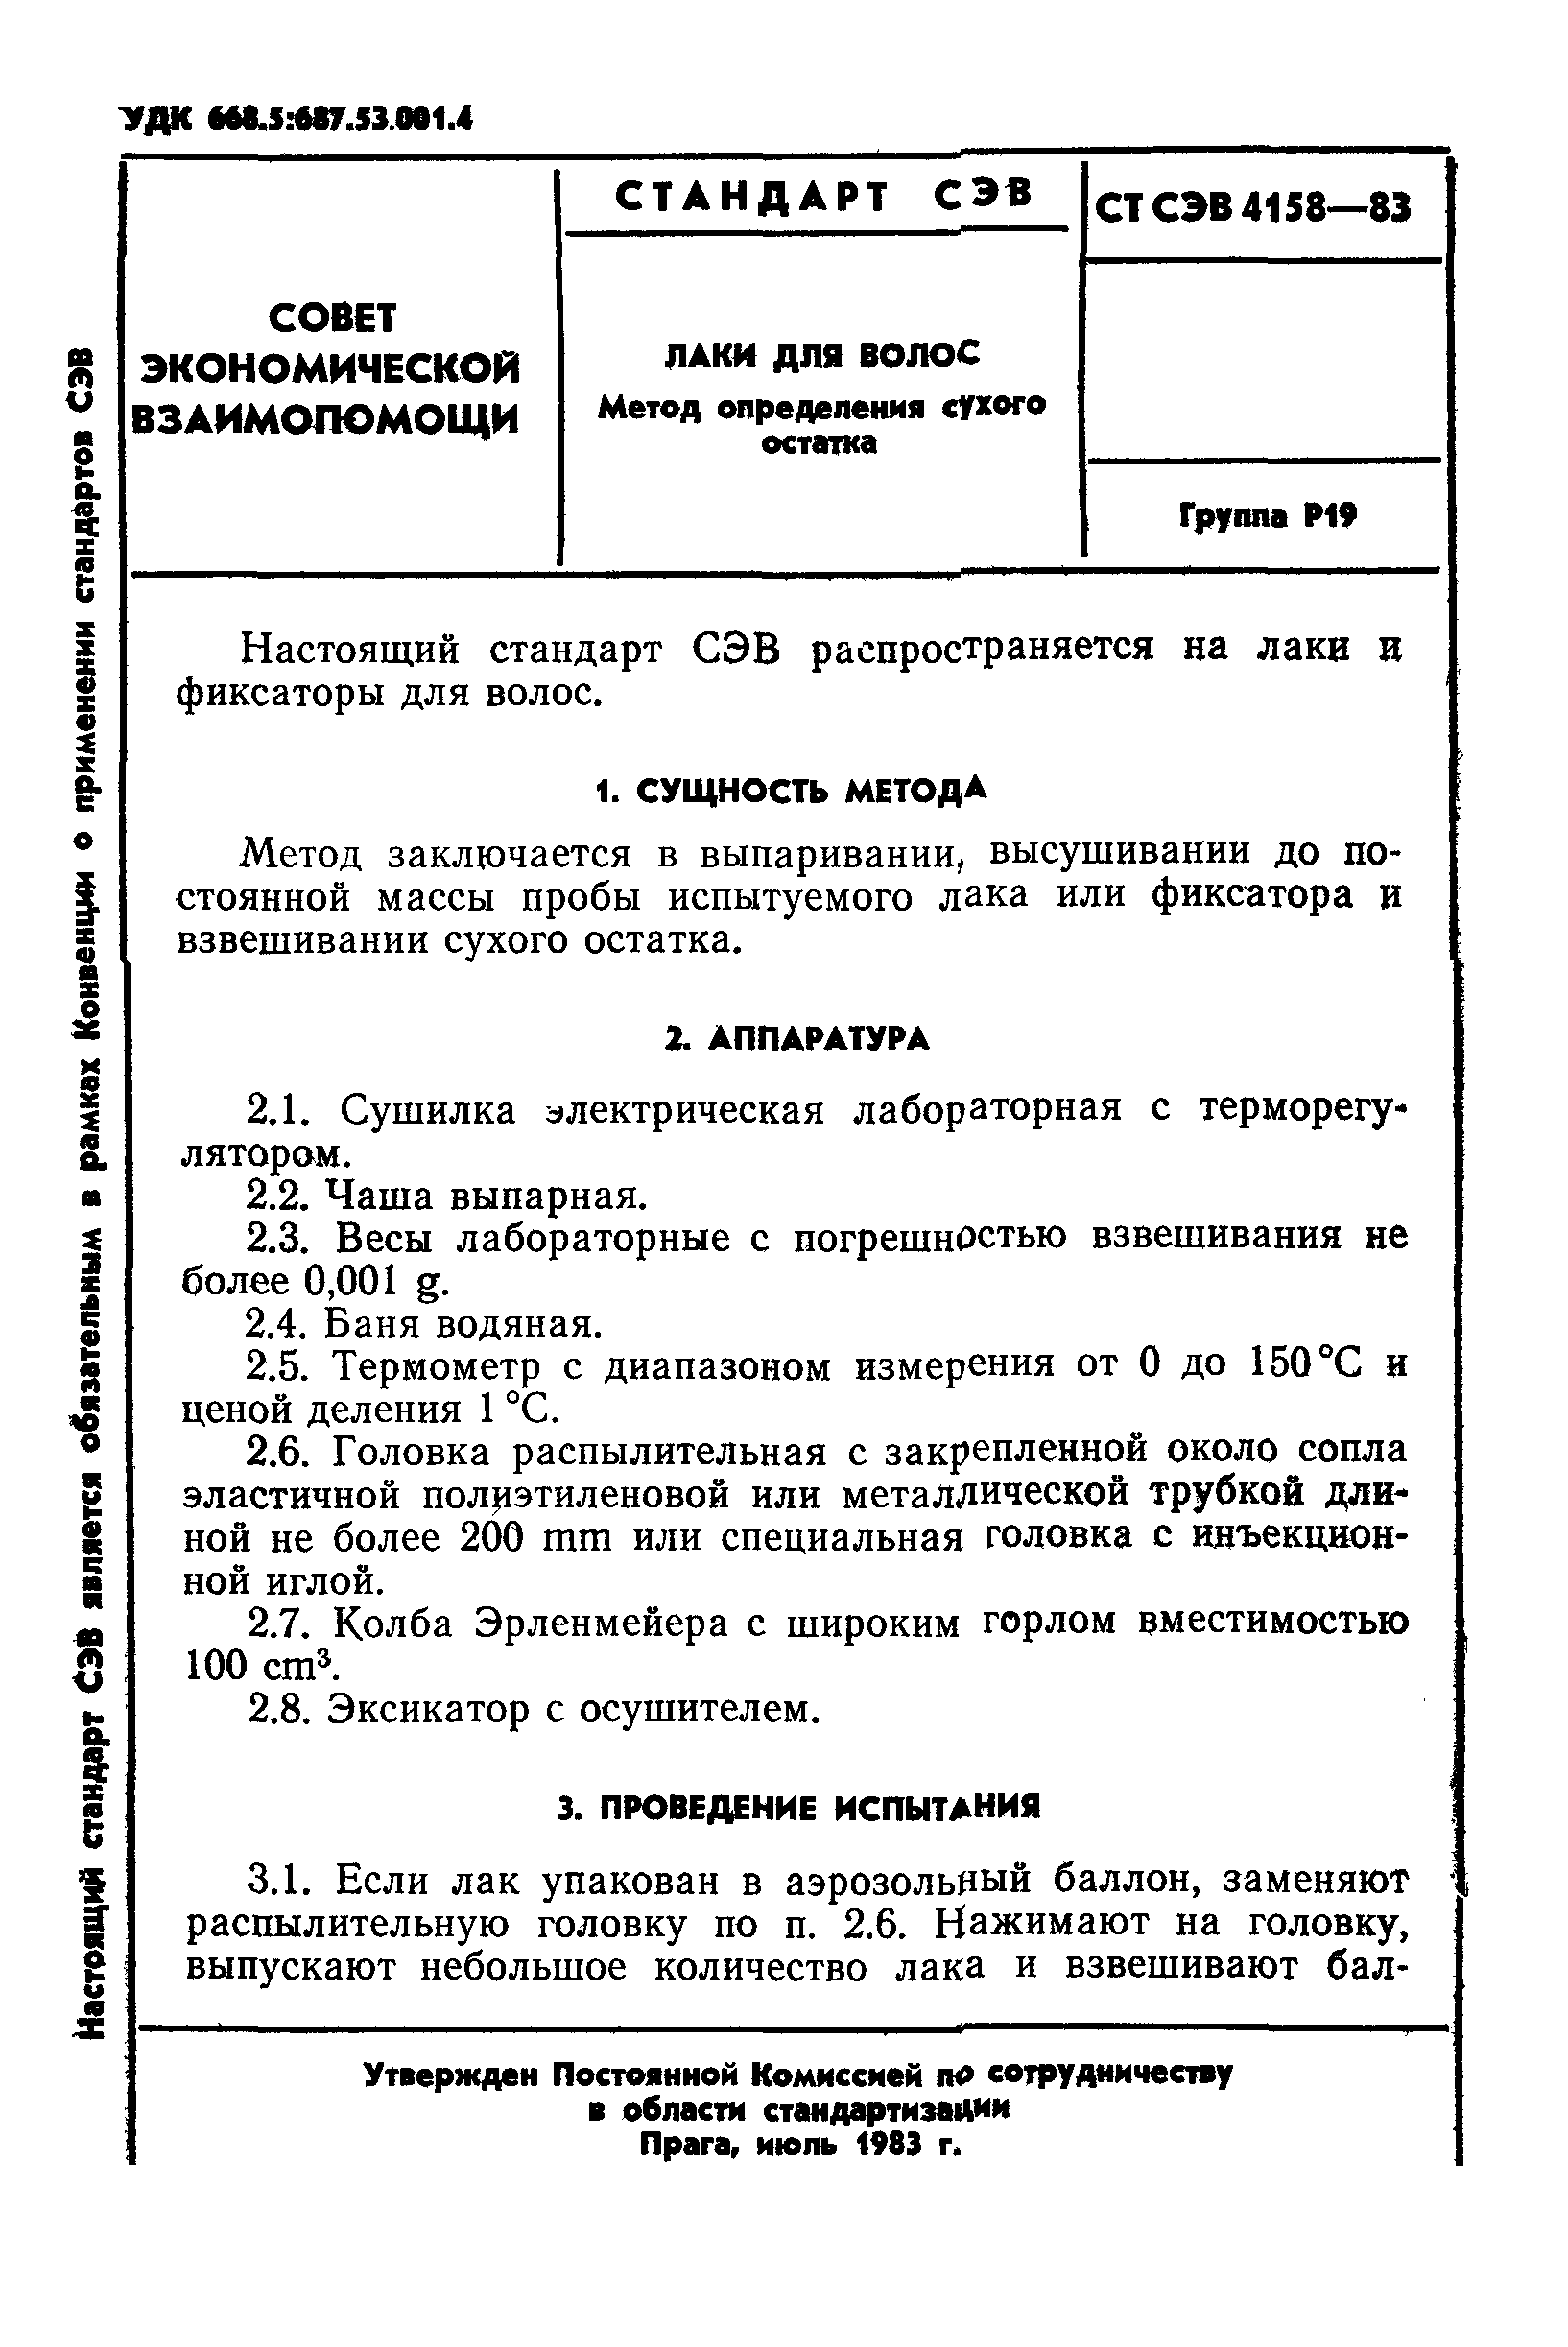 СТ СЭВ 4158-83